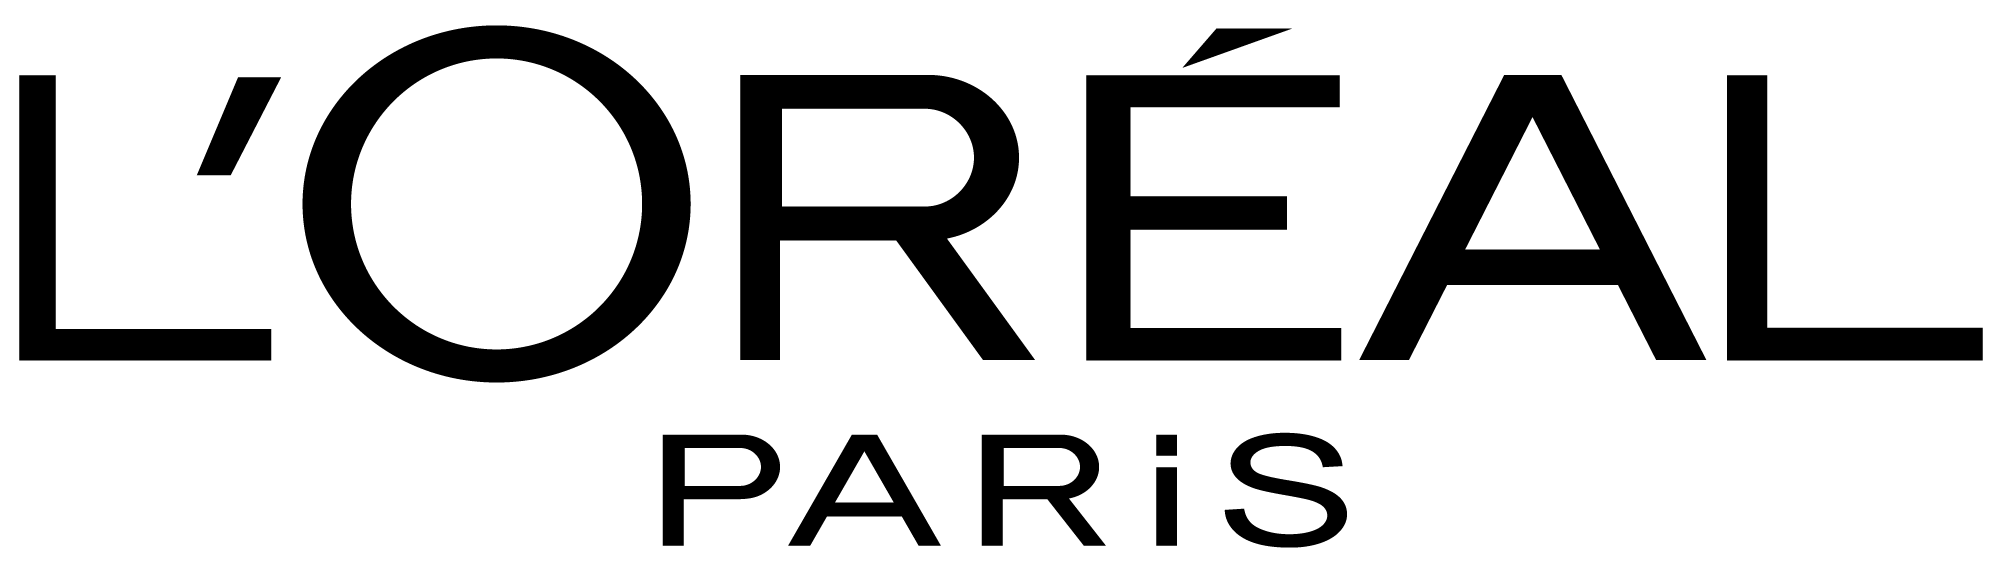 Loreal Logo Crni Tajna blistavog tena Jelene Stupljanin: Zašto je LOréal Paris Bright Reveal linija njen pouzdani izbor